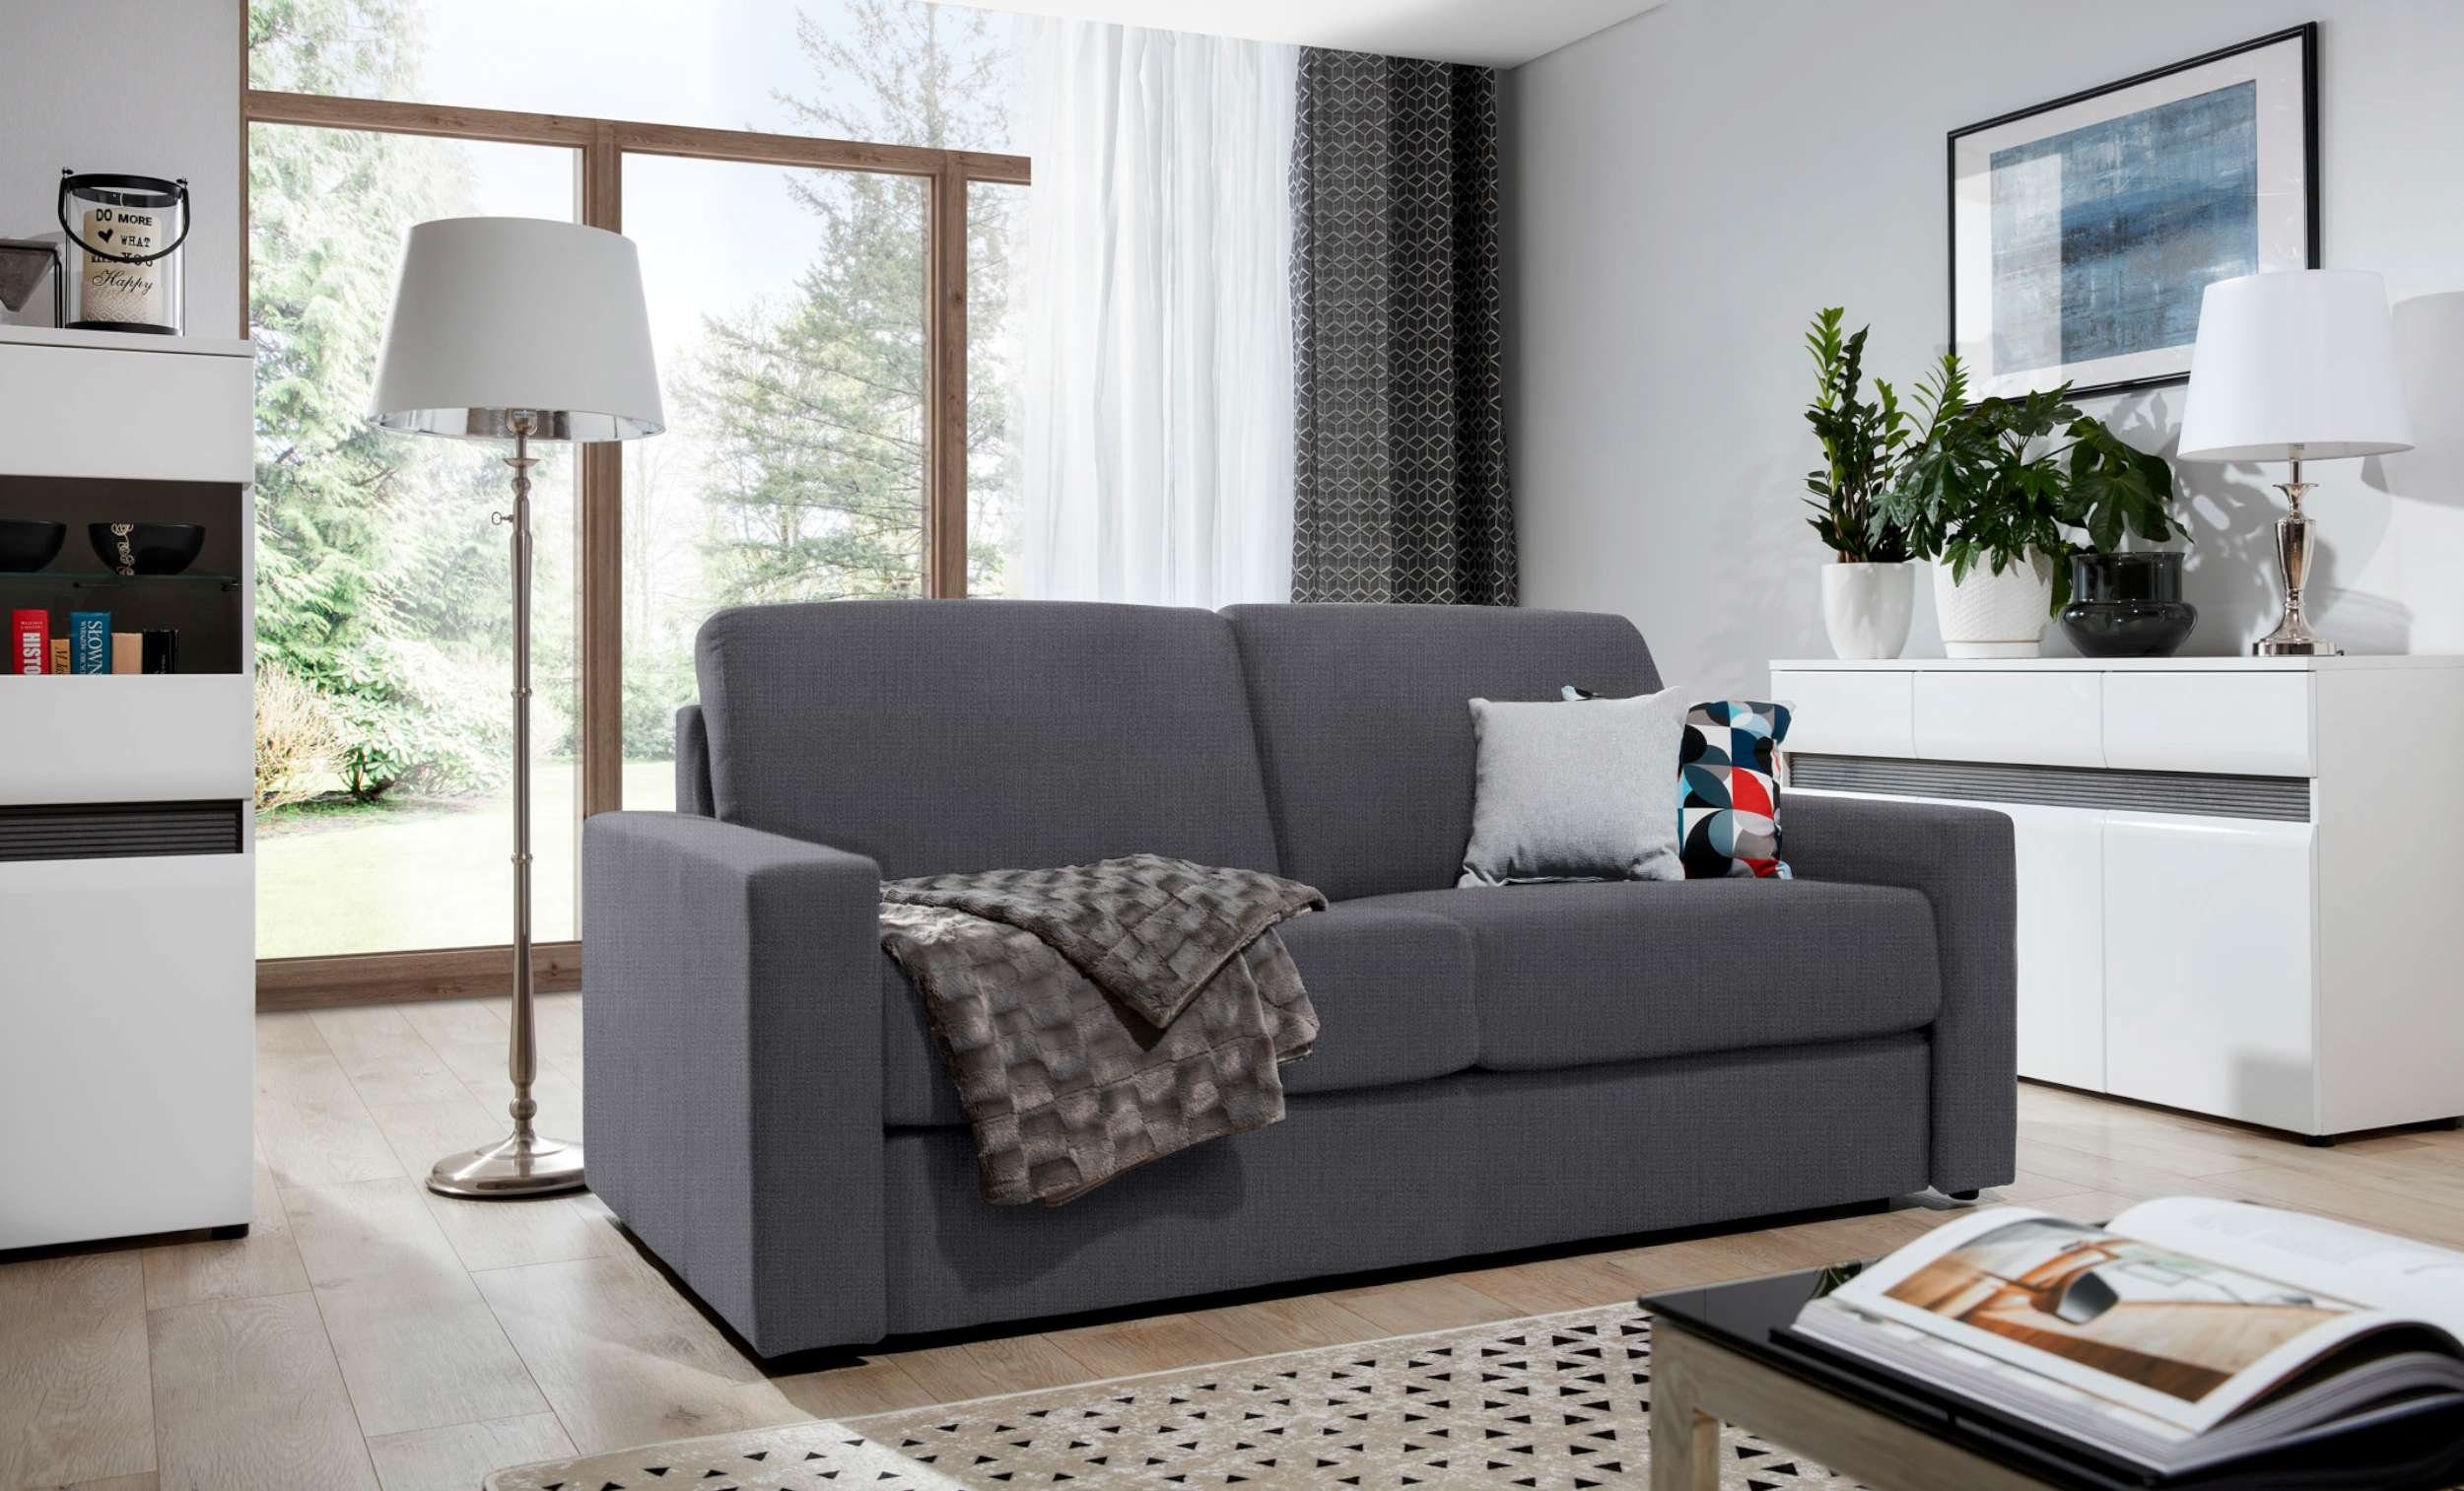 Frieda, T18 und Sofa, Modern mit im Design 2-Sitzer, stellbar, Bettfunktion, 3-Sitzer Schaumstoff frei Stylefy T28, Raum